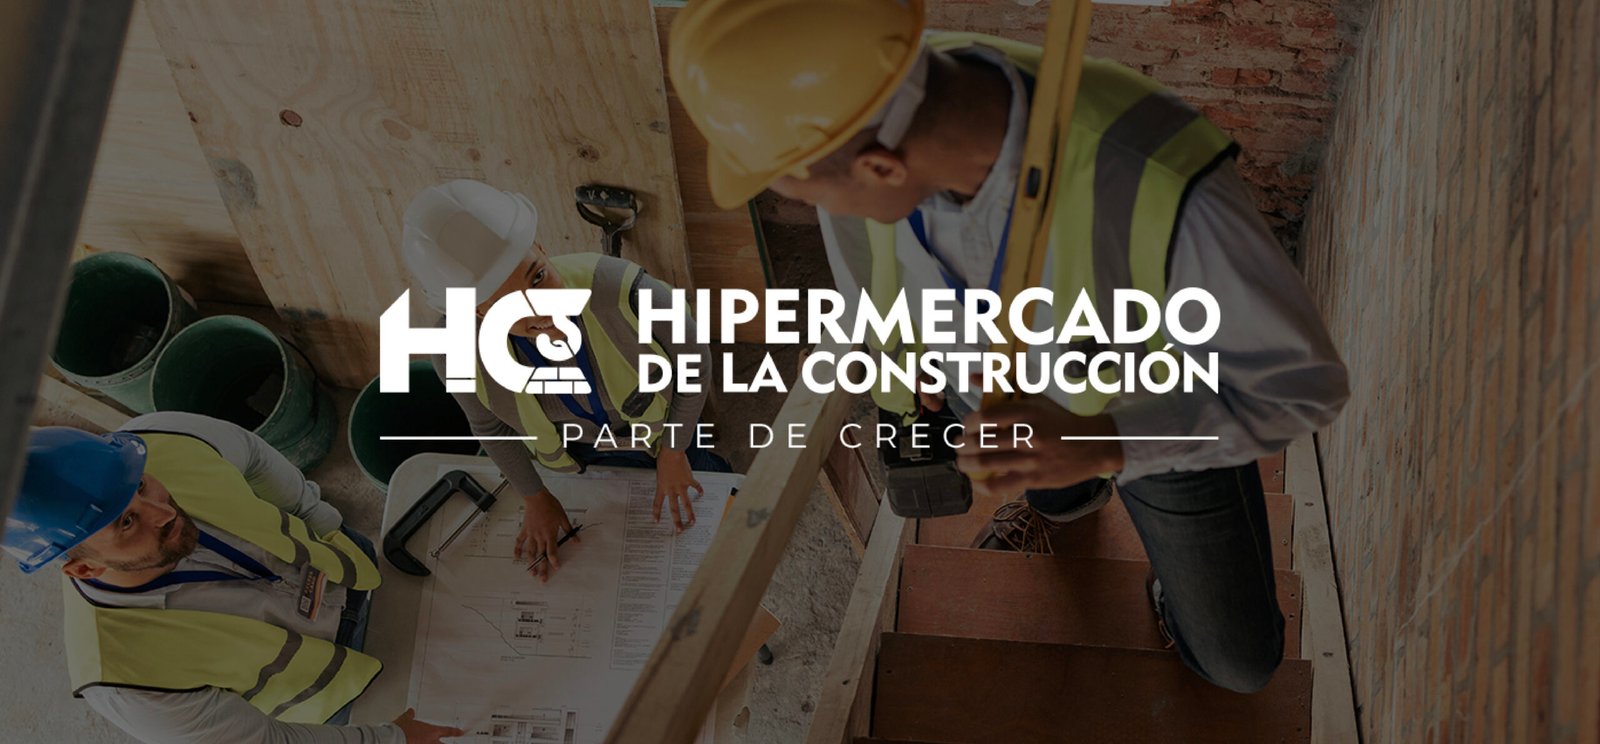 HIPERMERCADO DE LA CONSTRUCCIÓN - LOGO